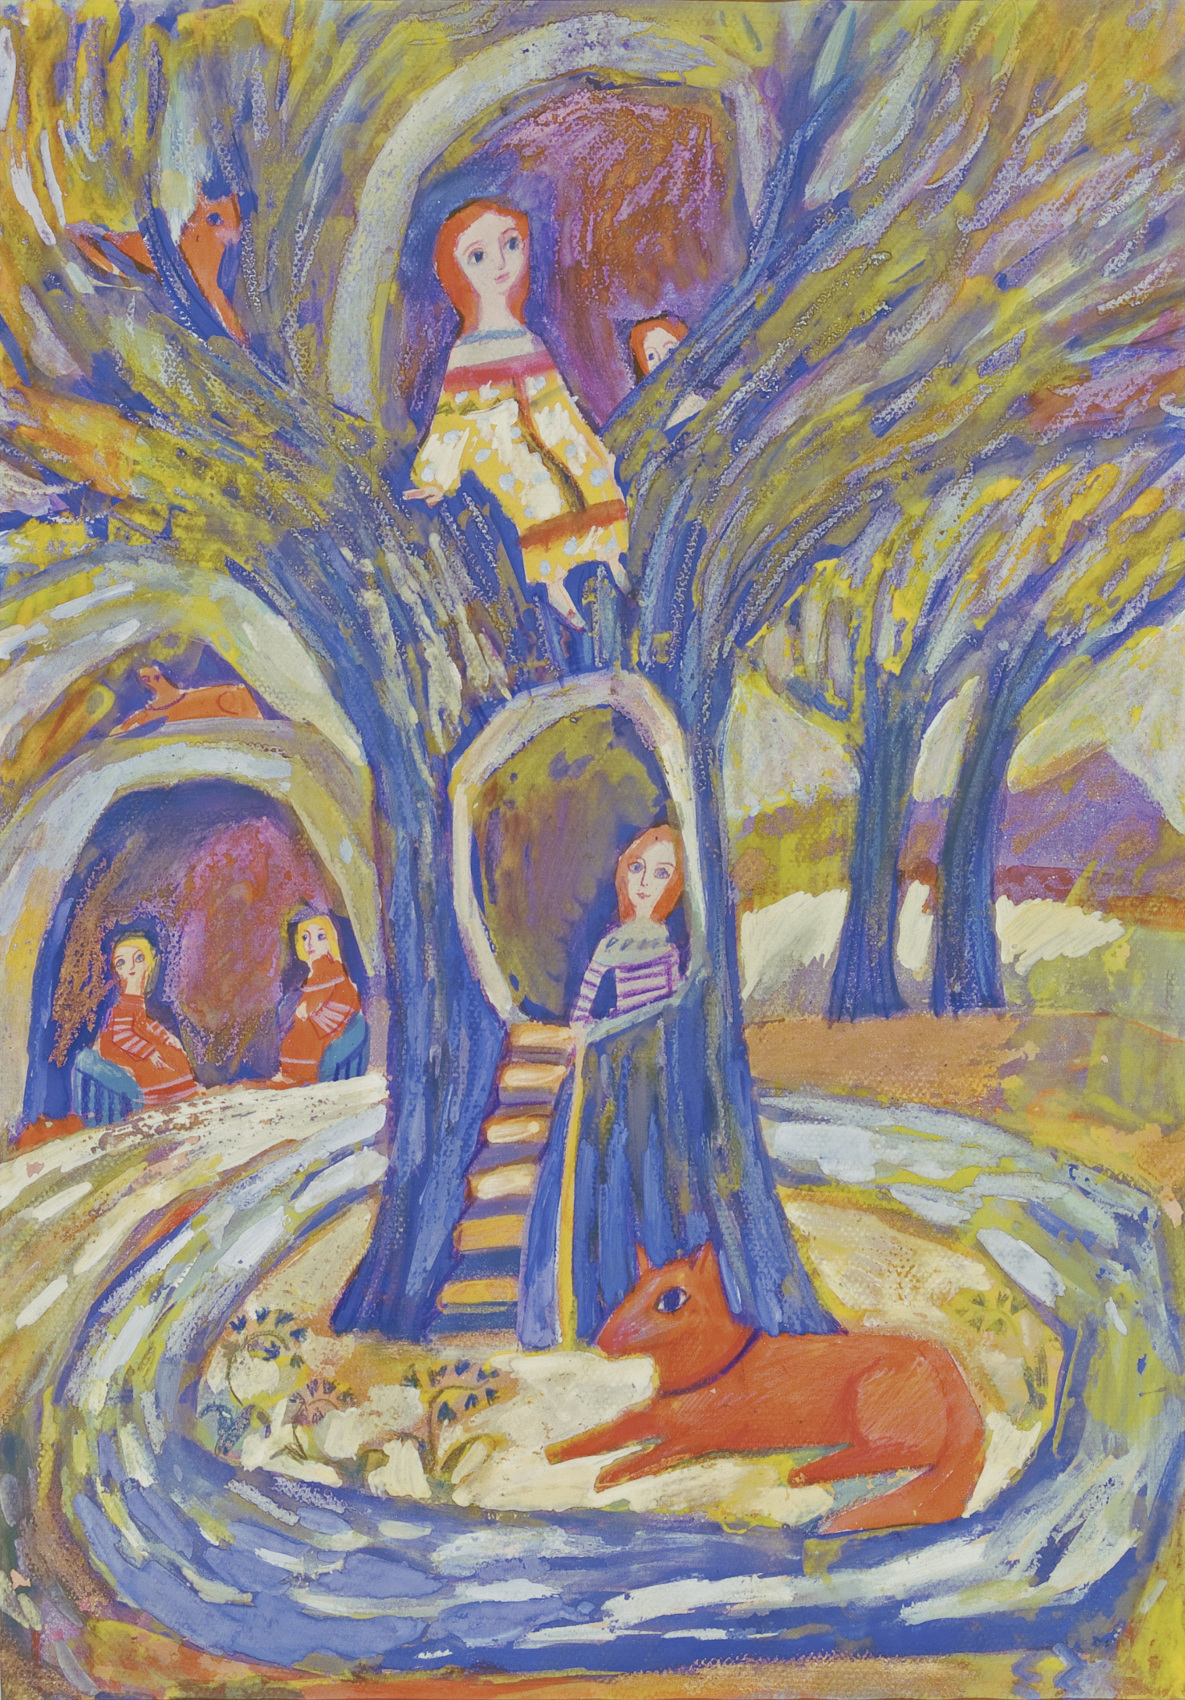    Мир сказки Елены Зарубовой | Домик в дереве